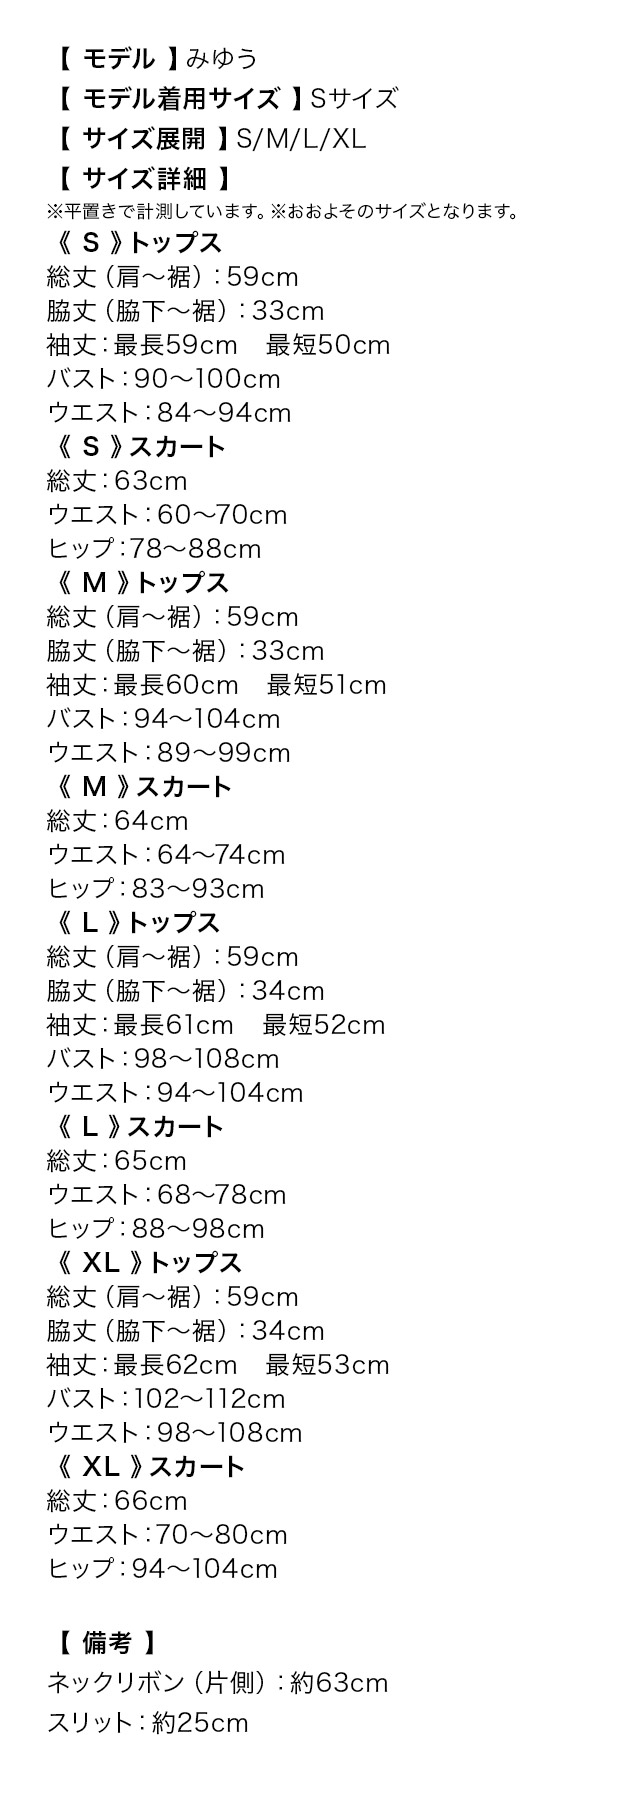 サテンアシメショルダーカットブラウス×タイトスリットスカートセットアップドレスのサイズ表